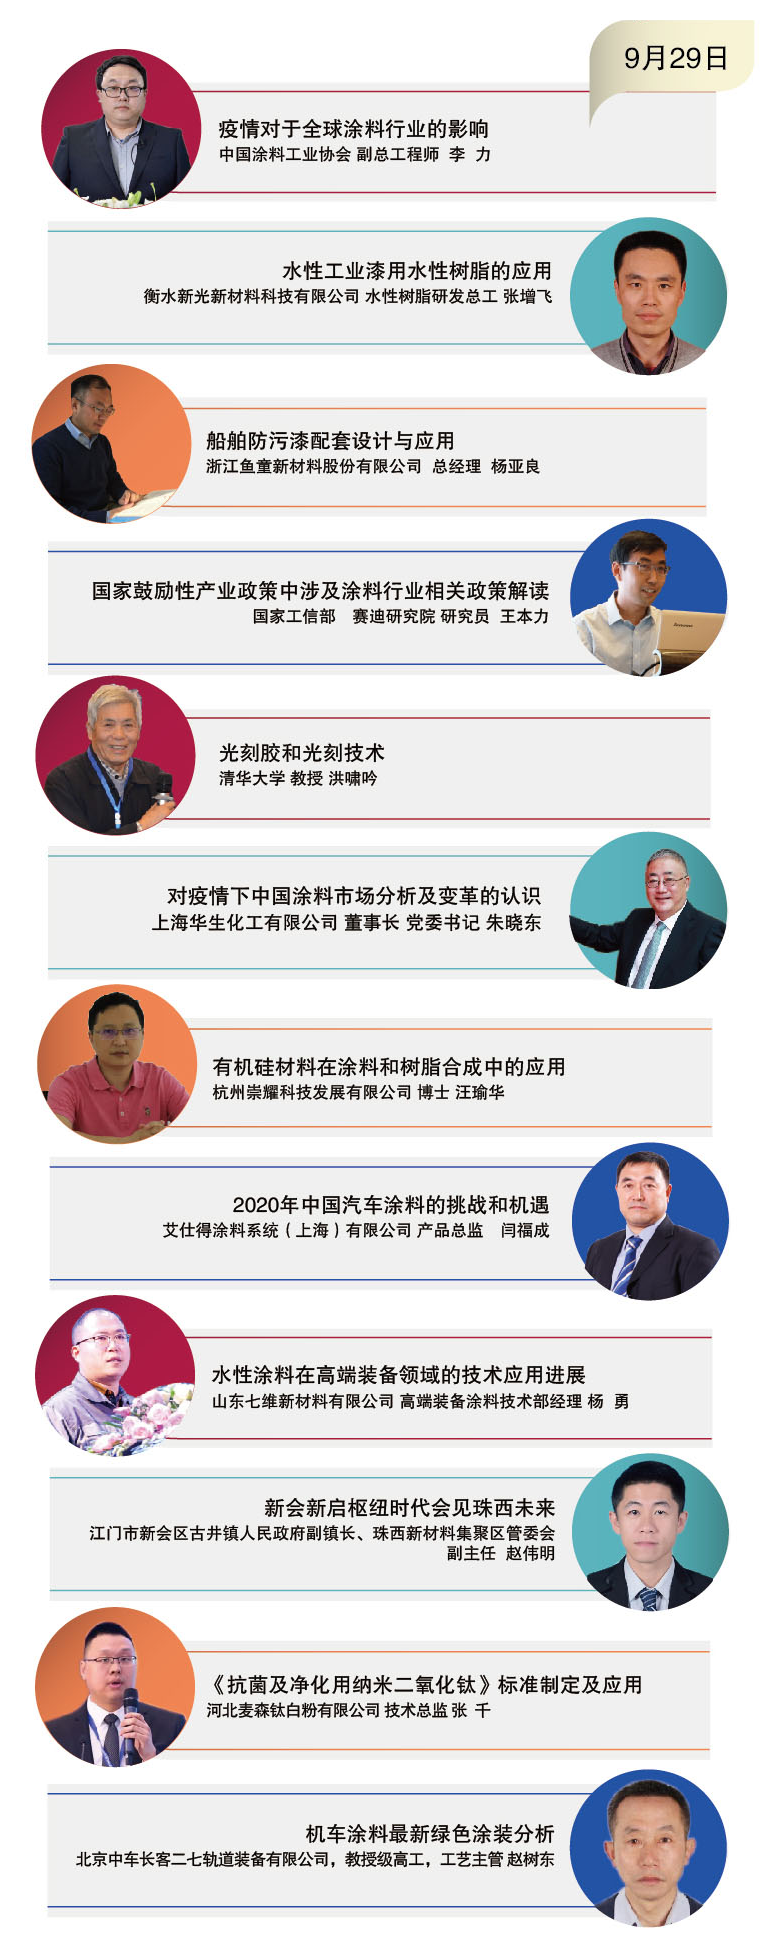 2020年中国涂料工业信息年会暨中国涂料工业协会专家委员会、《中国涂料》编委会会议